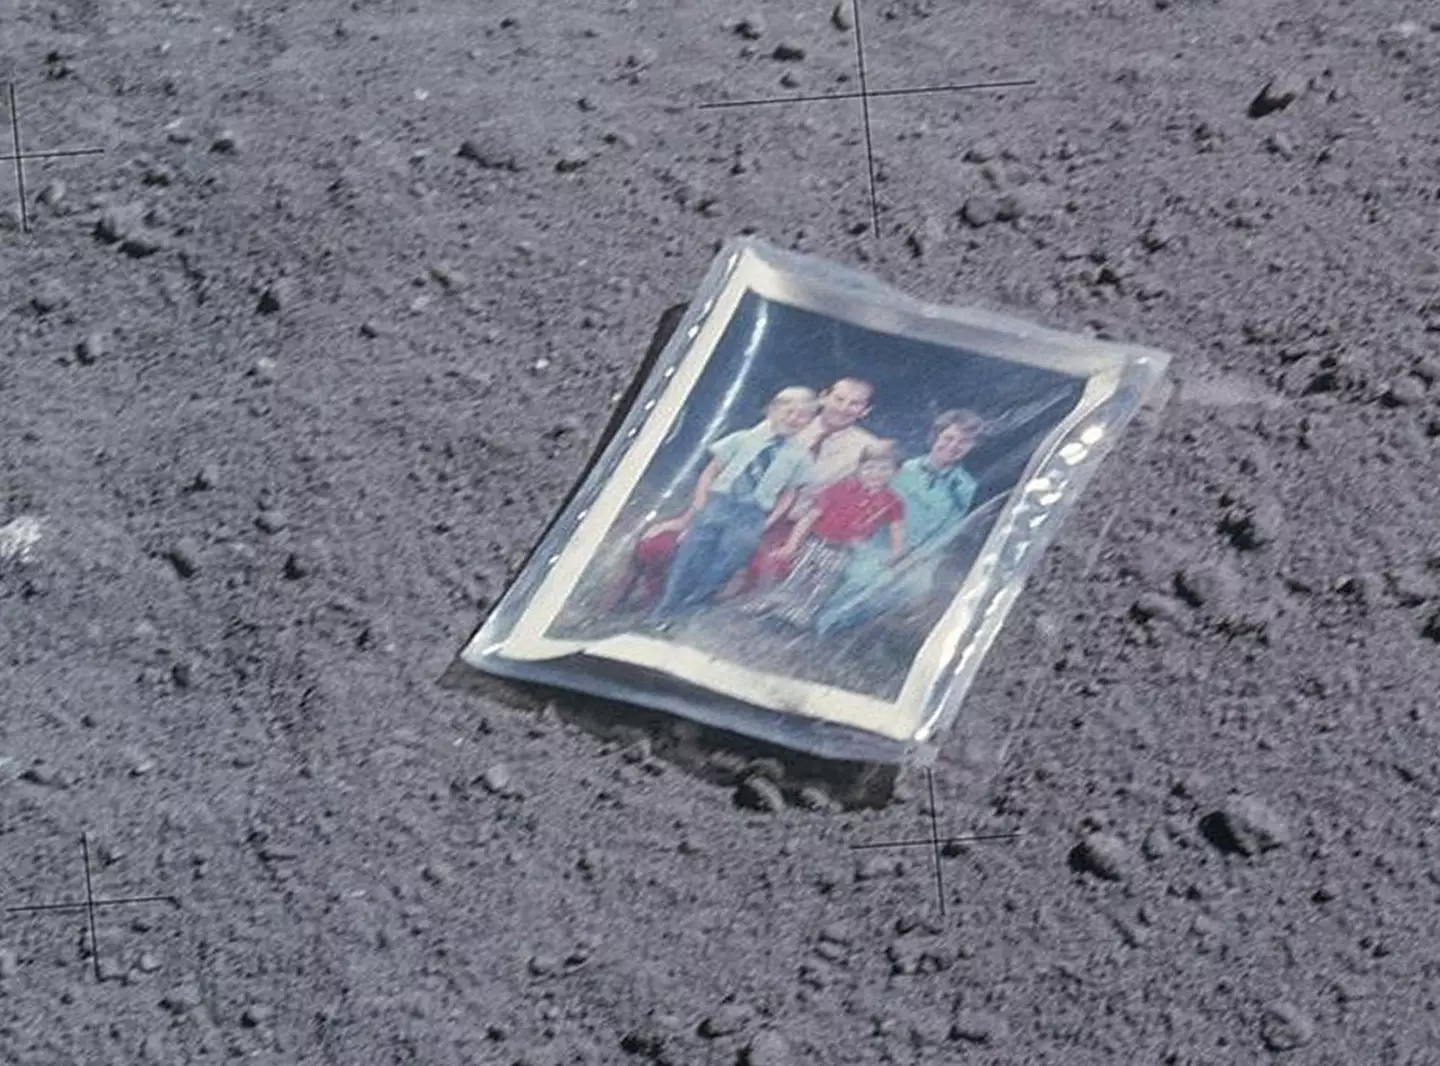 Foto de família deixada na Lua há 50 anos com mensagem para quem a encontrar